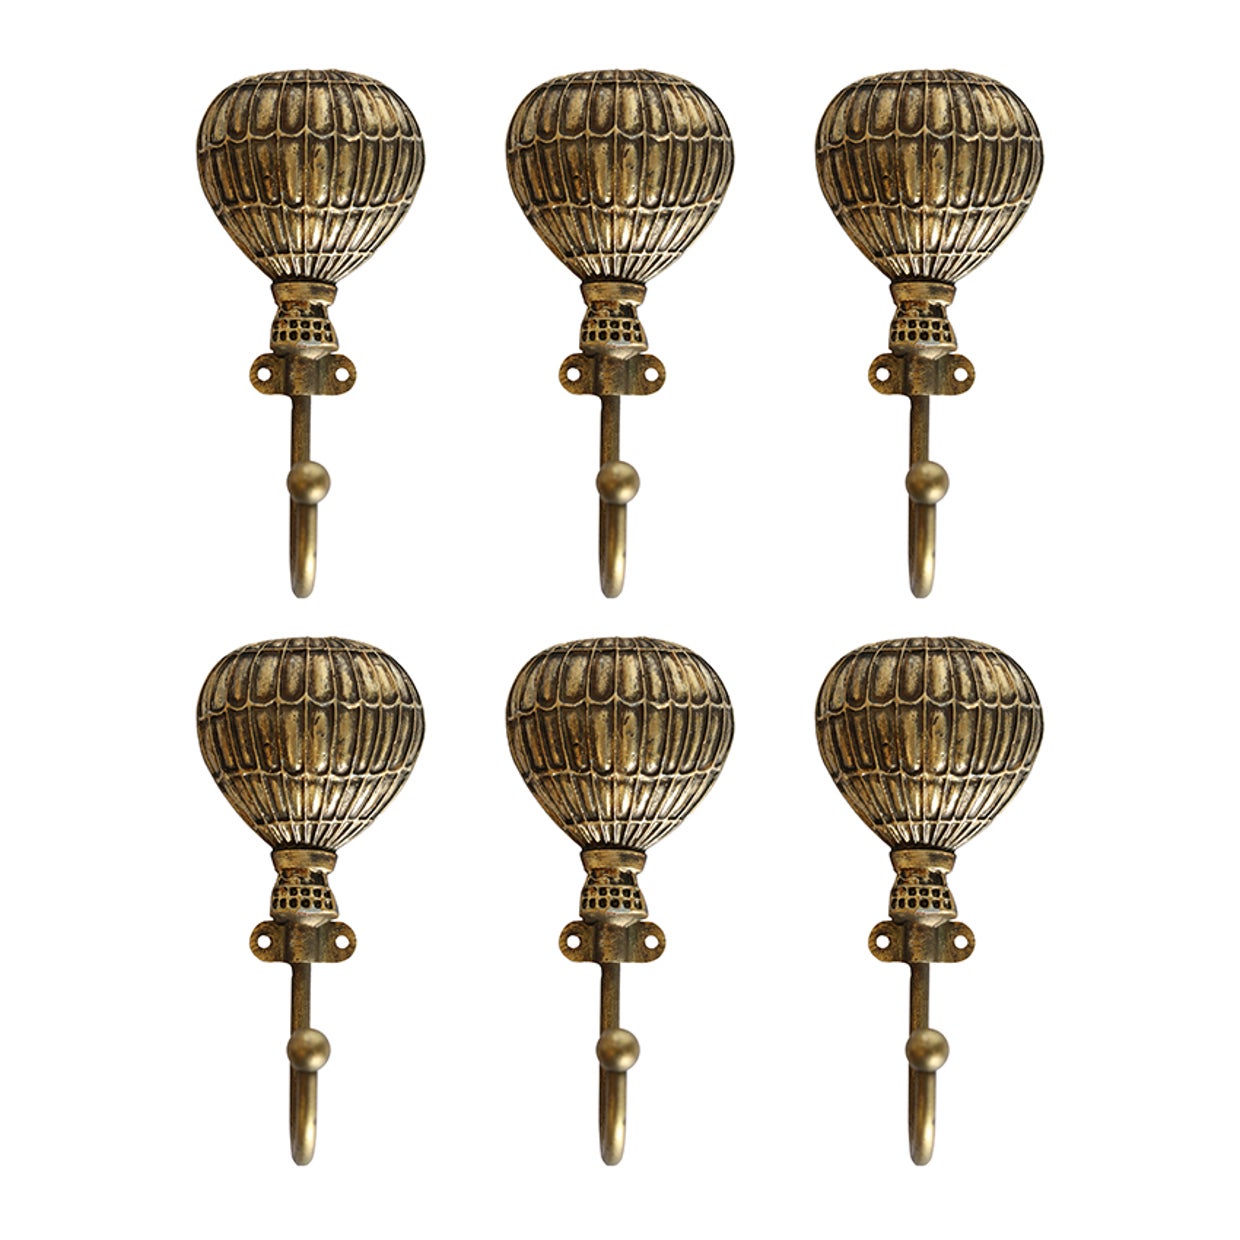 Set of 6 Balloon Hooks in Brass Finish